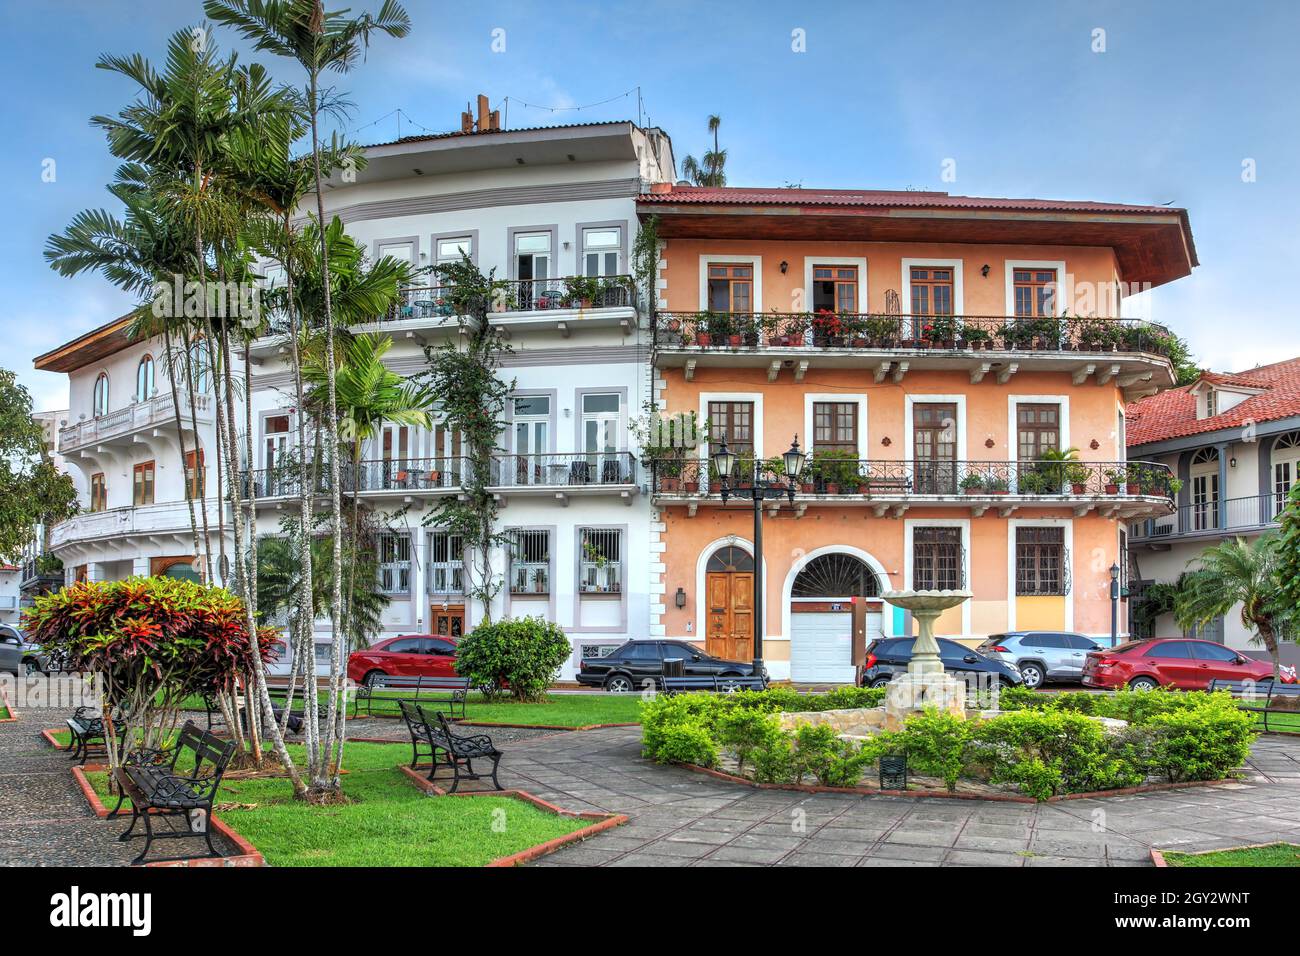 Anciennes maisons coloniales à Casco Antiguo, Panama.La maison orange est appelée la Maison des lames de Ruben, un chanteur, acteur et politicien panaméen. Banque D'Images